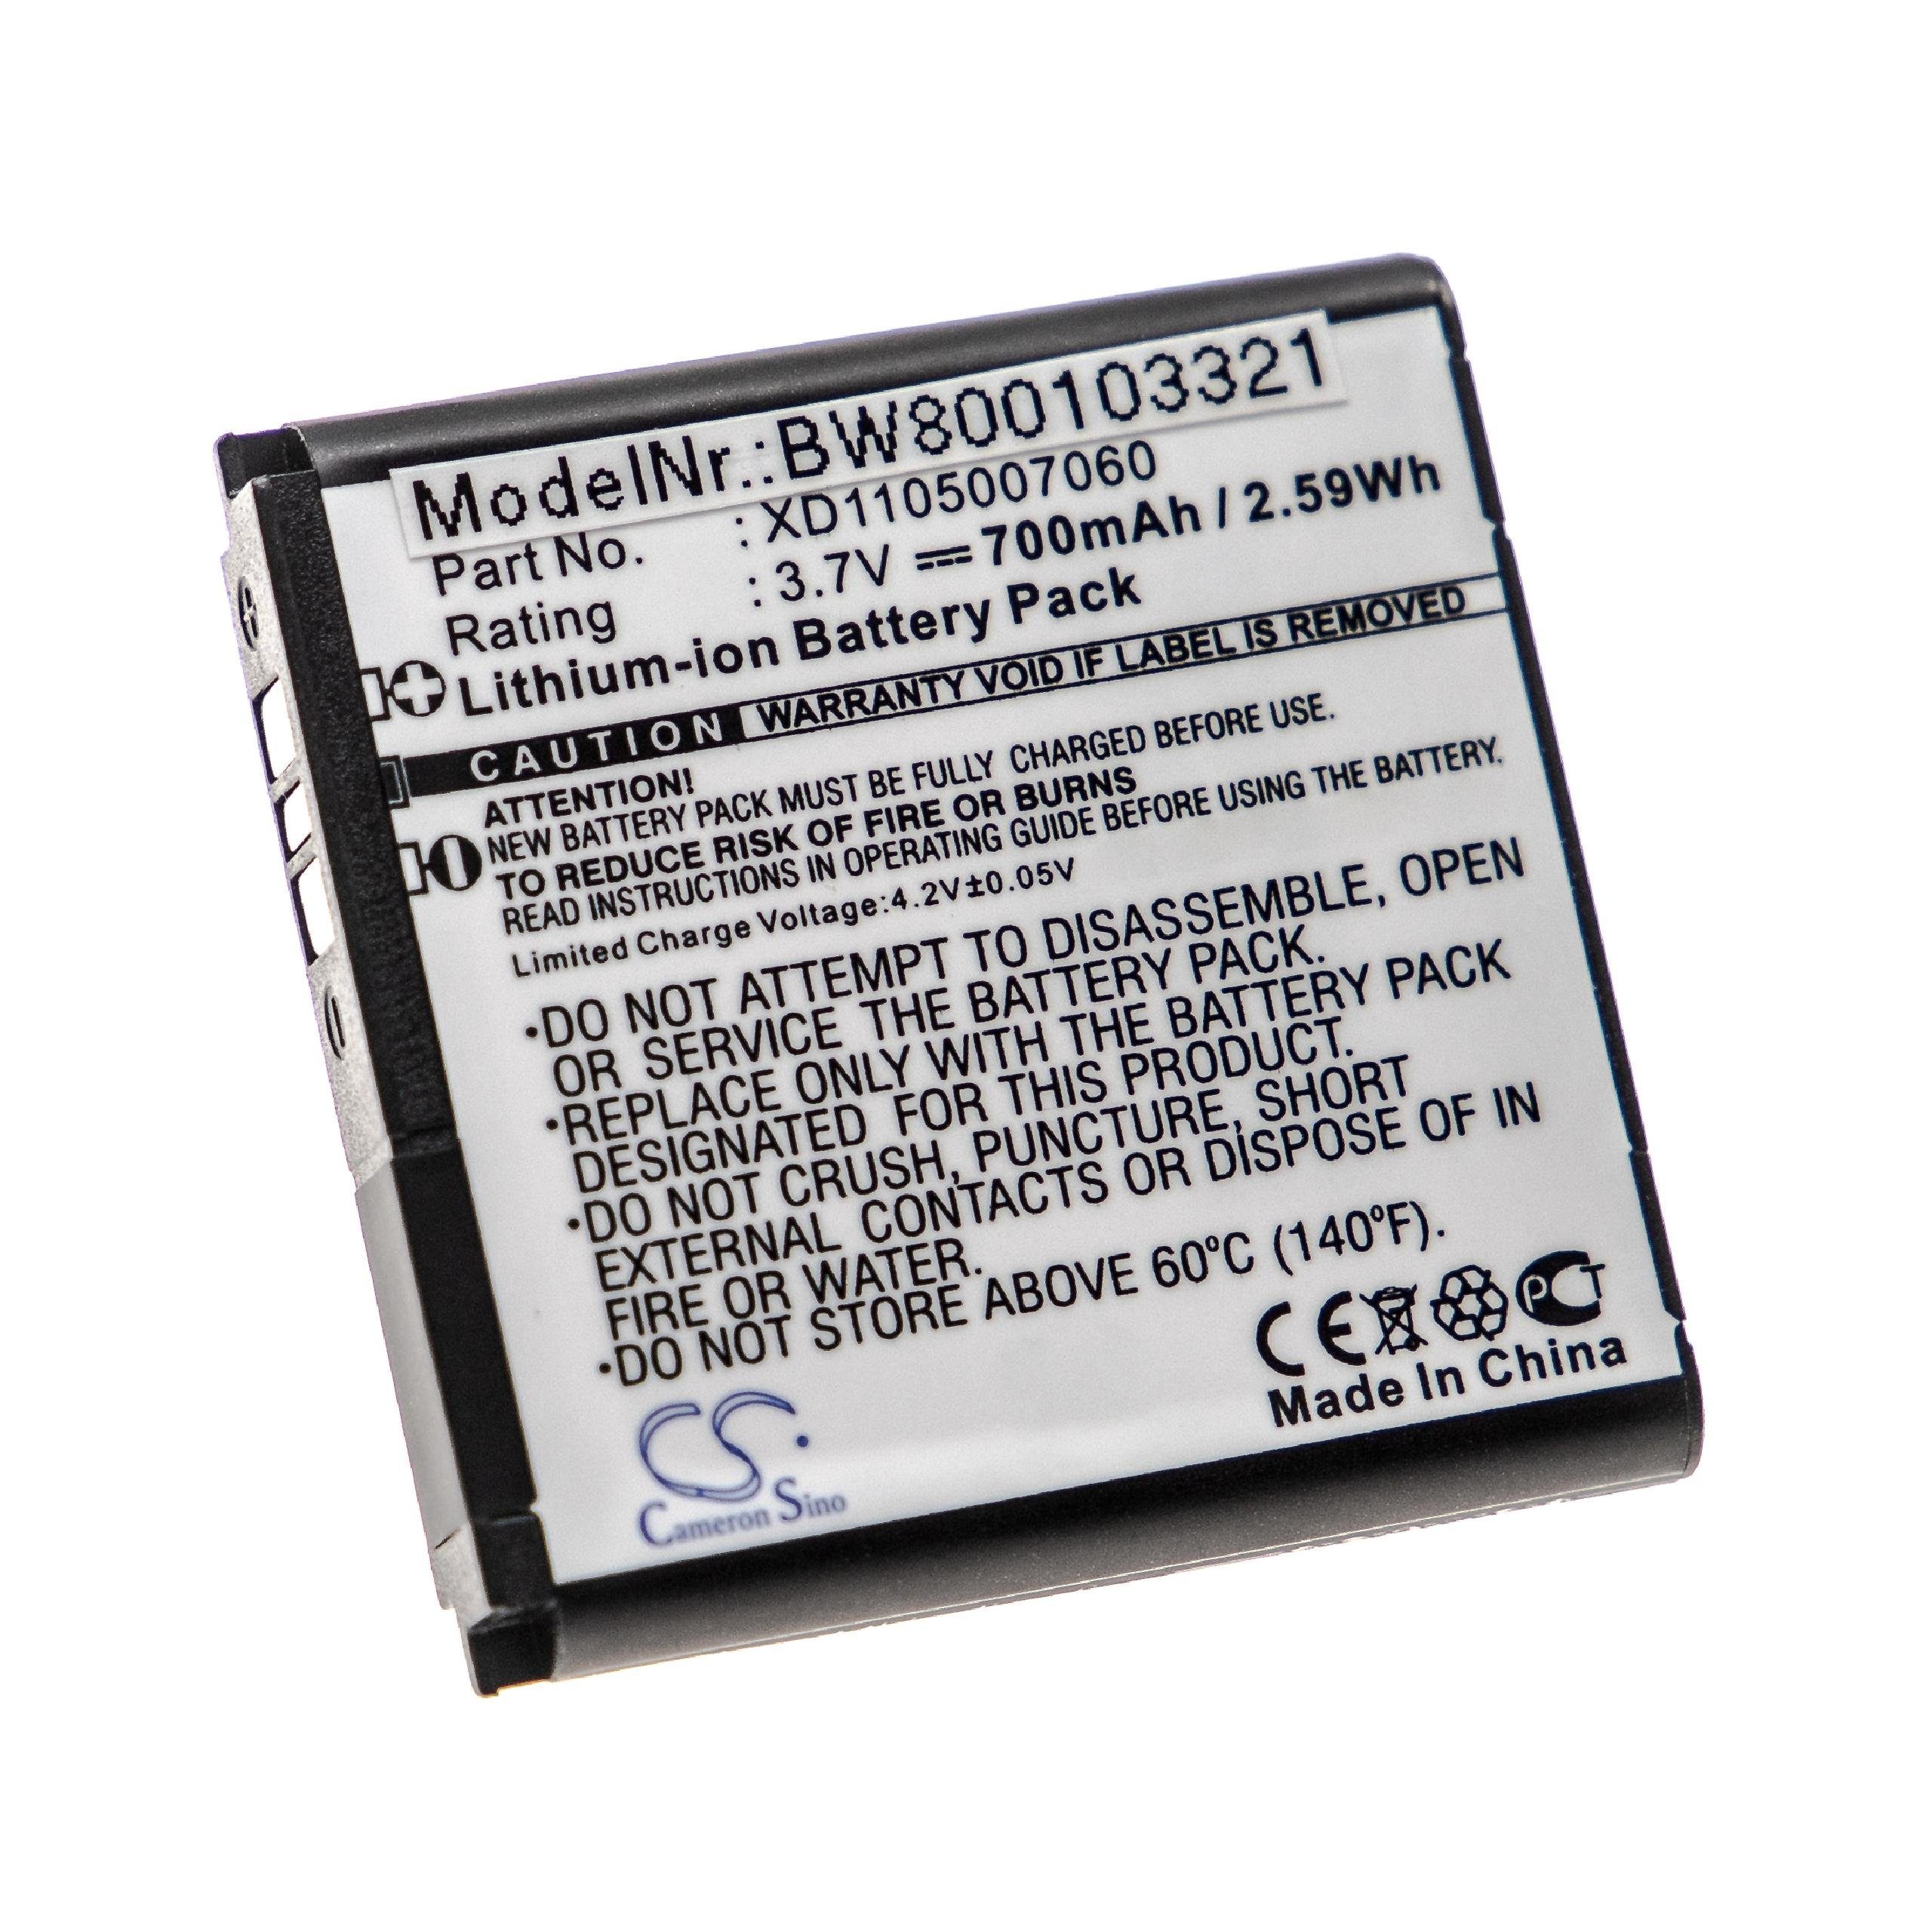 Batterie 3.7V - 1000mAh pour téléphones Alcatel, Orange, Toshiba